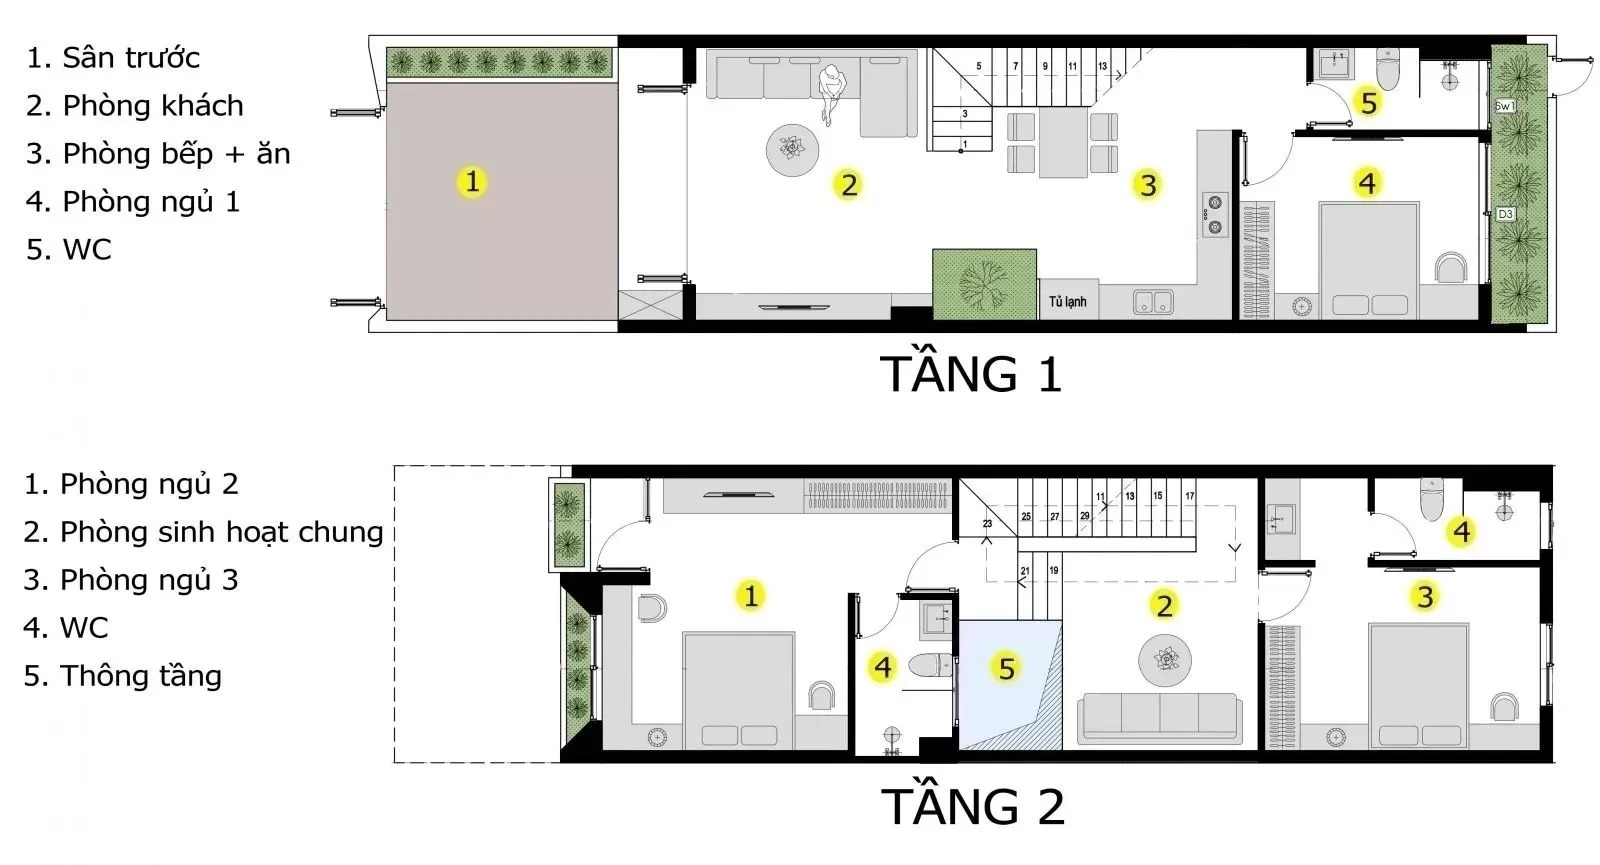 Bố trí không gian các phòng chức năng phù hợp với diện tích xây dựng căn nhà